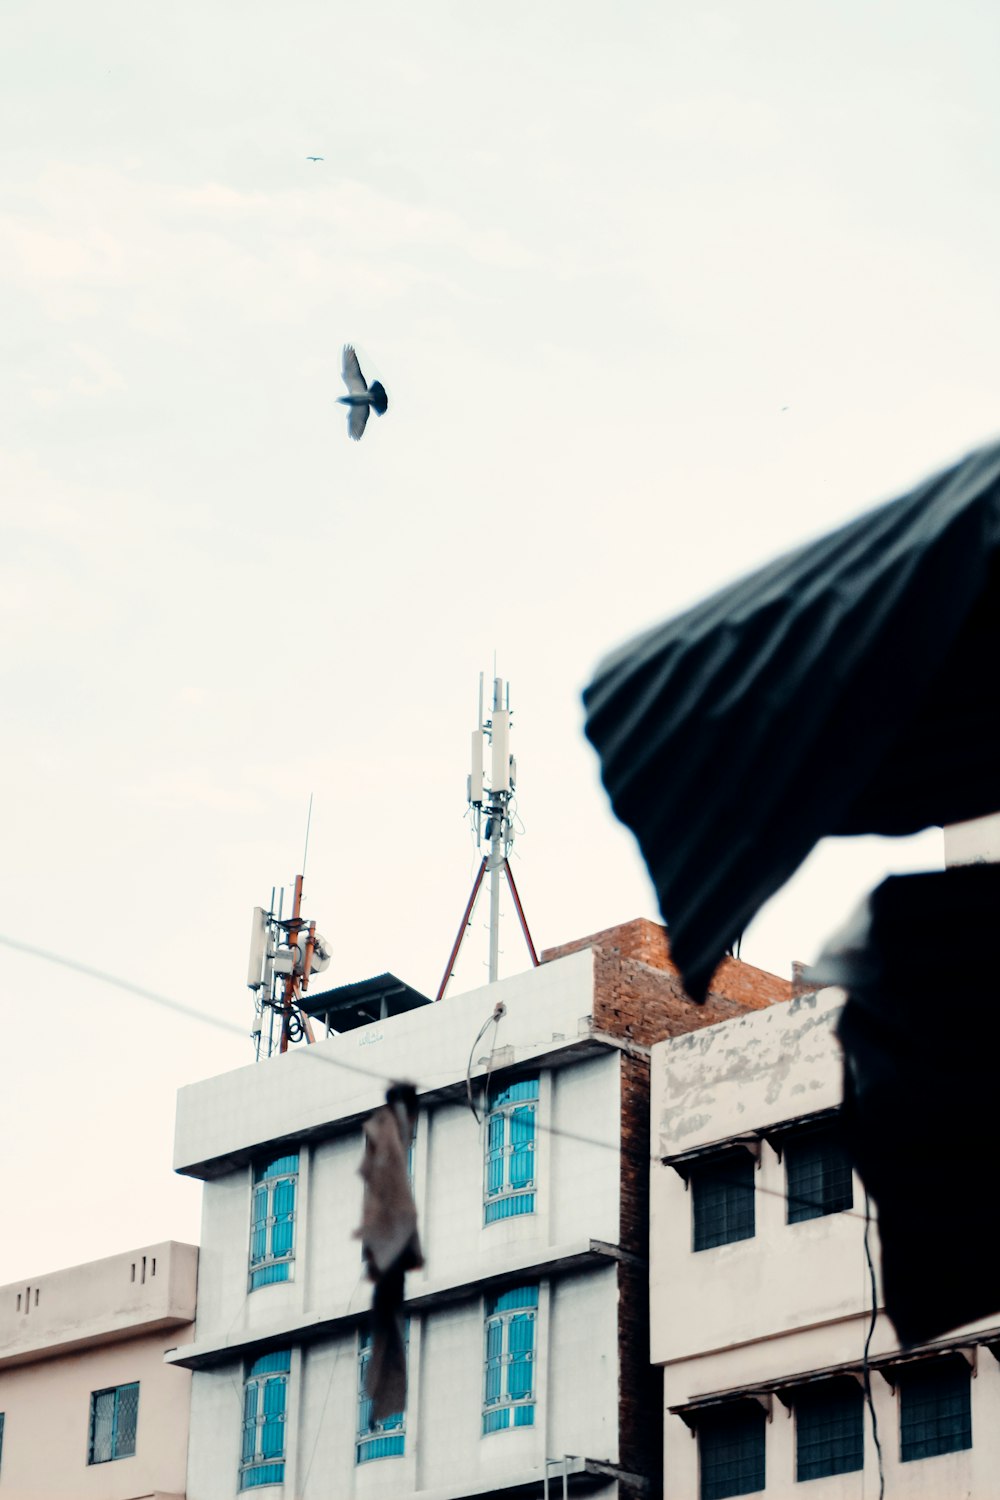 昼間、青と白のコンクリートの建物の上を飛ぶ黒い鳥